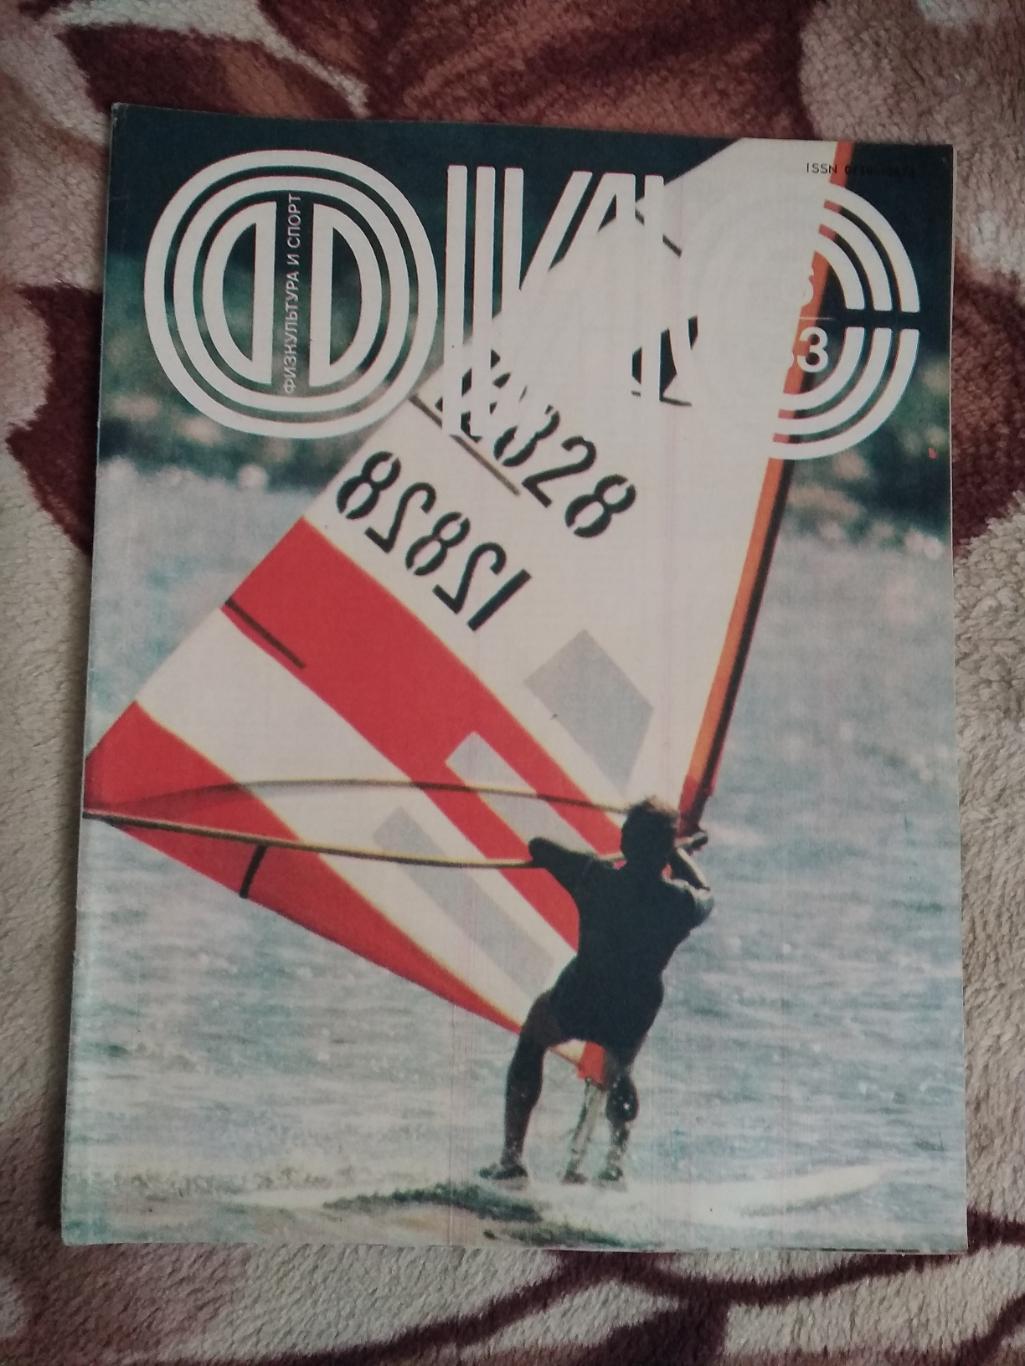 Журнал.Физкультура и спорт № 6 1983 г. (ФиС).